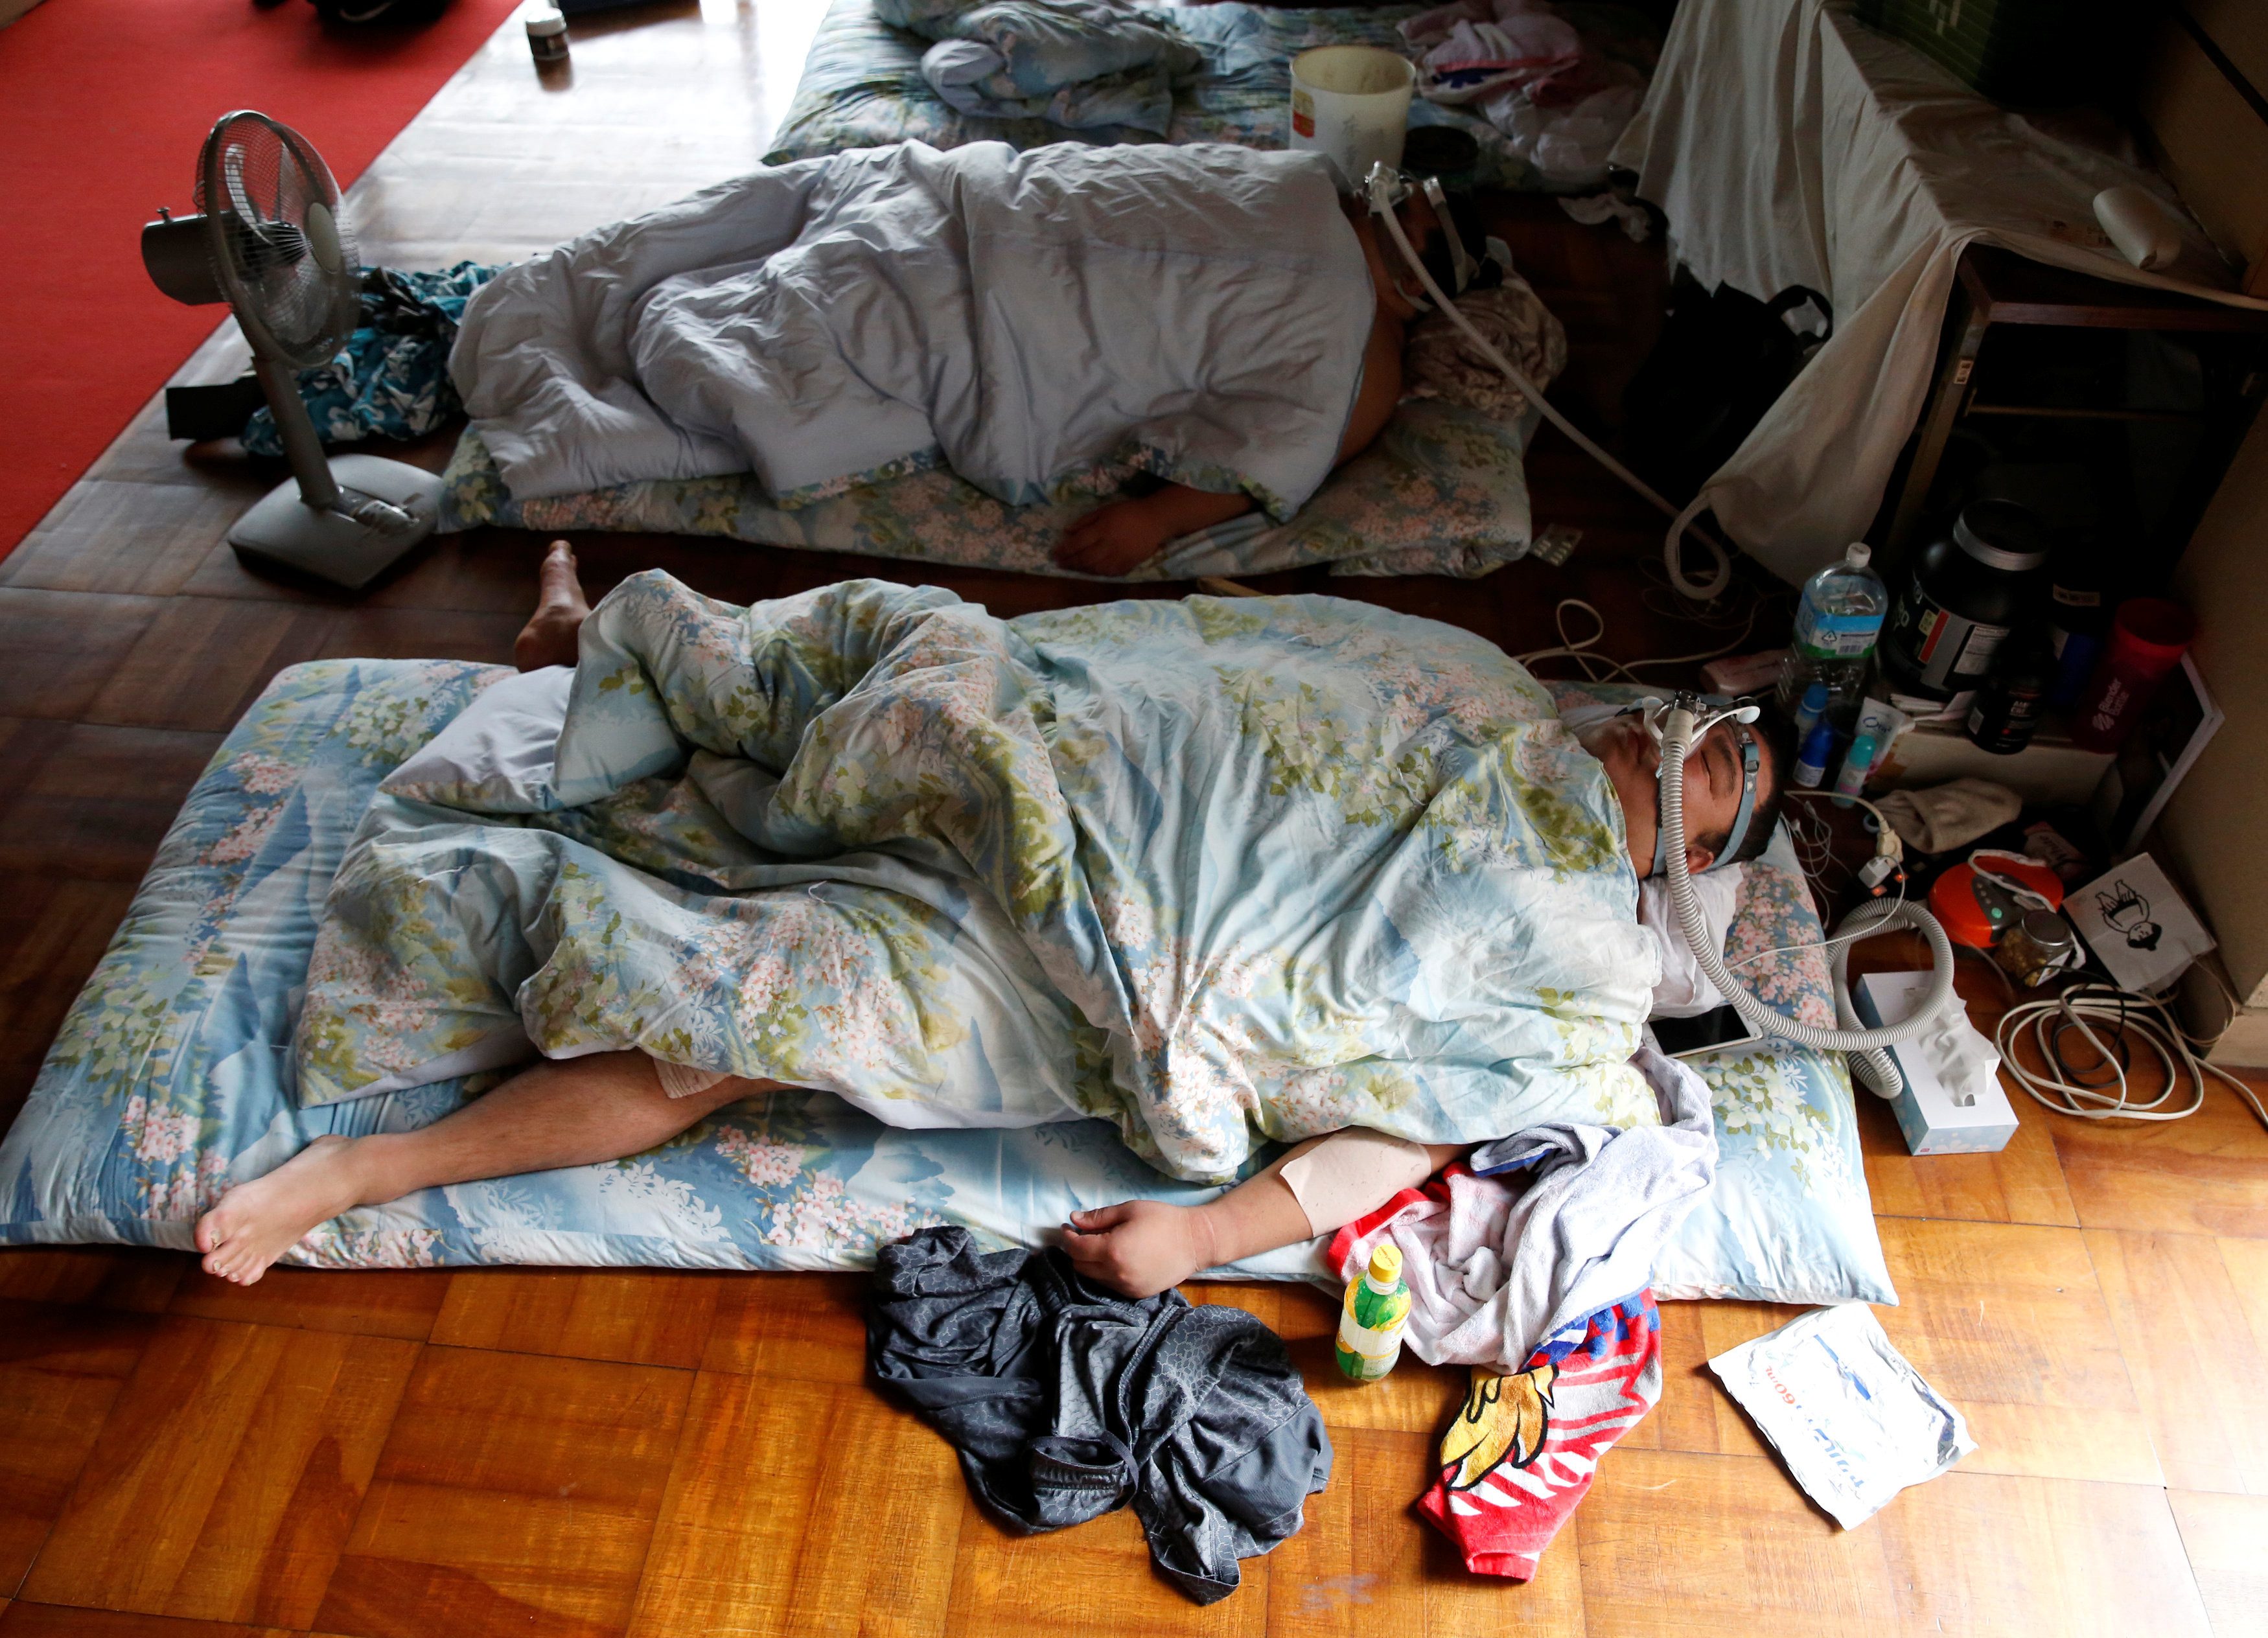 После приёма пищи борцам полагается несколько часов сна. При этом они спят в кислородных масках для восстановления дыхания. Фото © REUTERS/Issei Kato